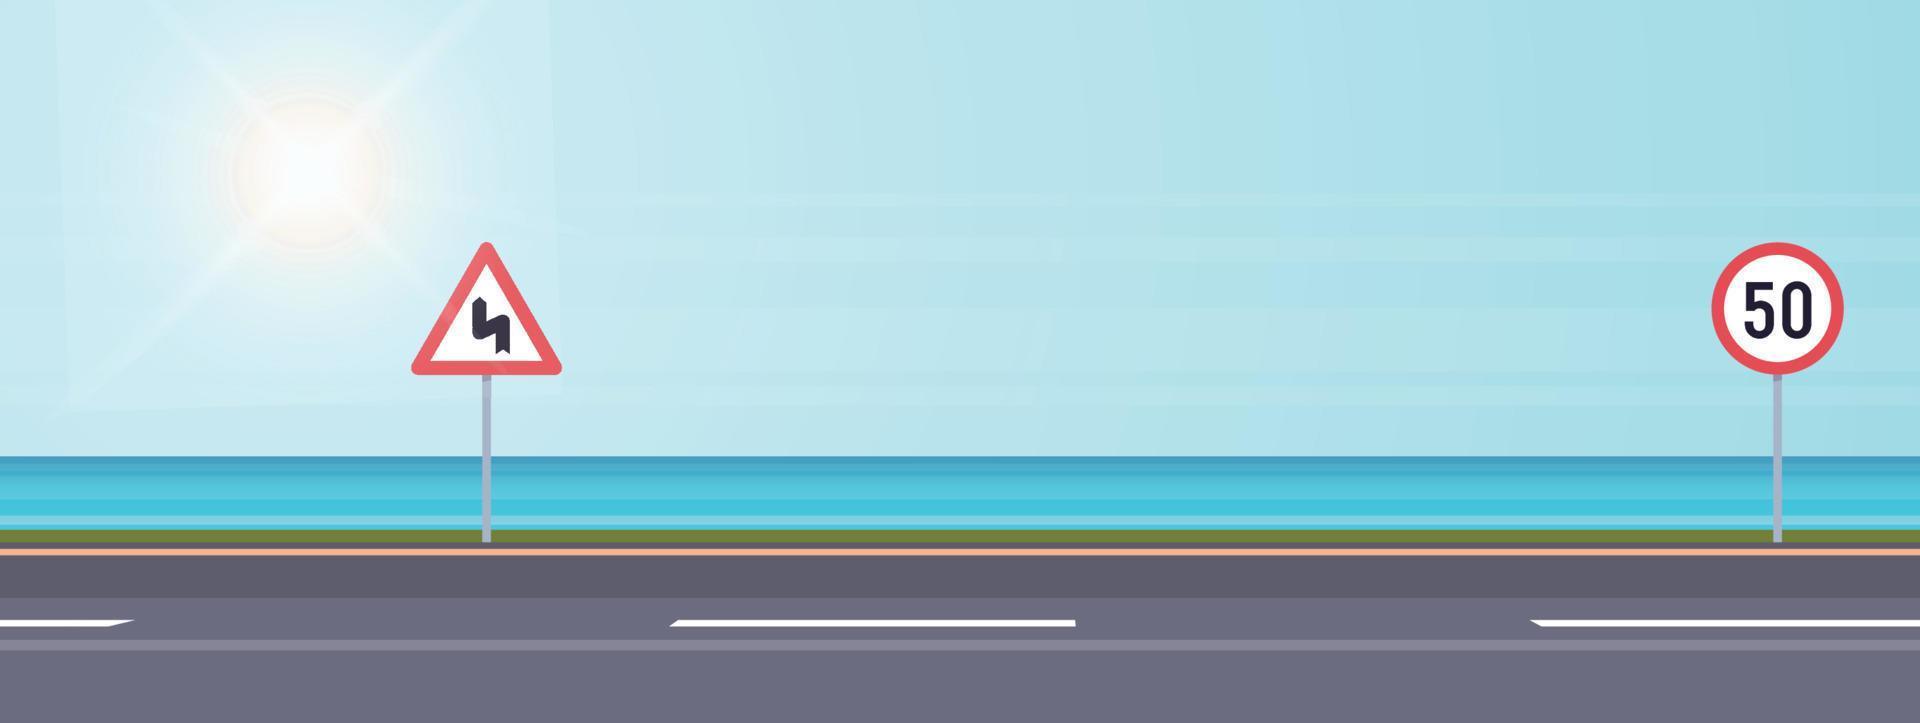 carretera costera y carretera de vacaciones de estilo moderno diseño de viajes al aire libre ilustración vectorial plana. vector